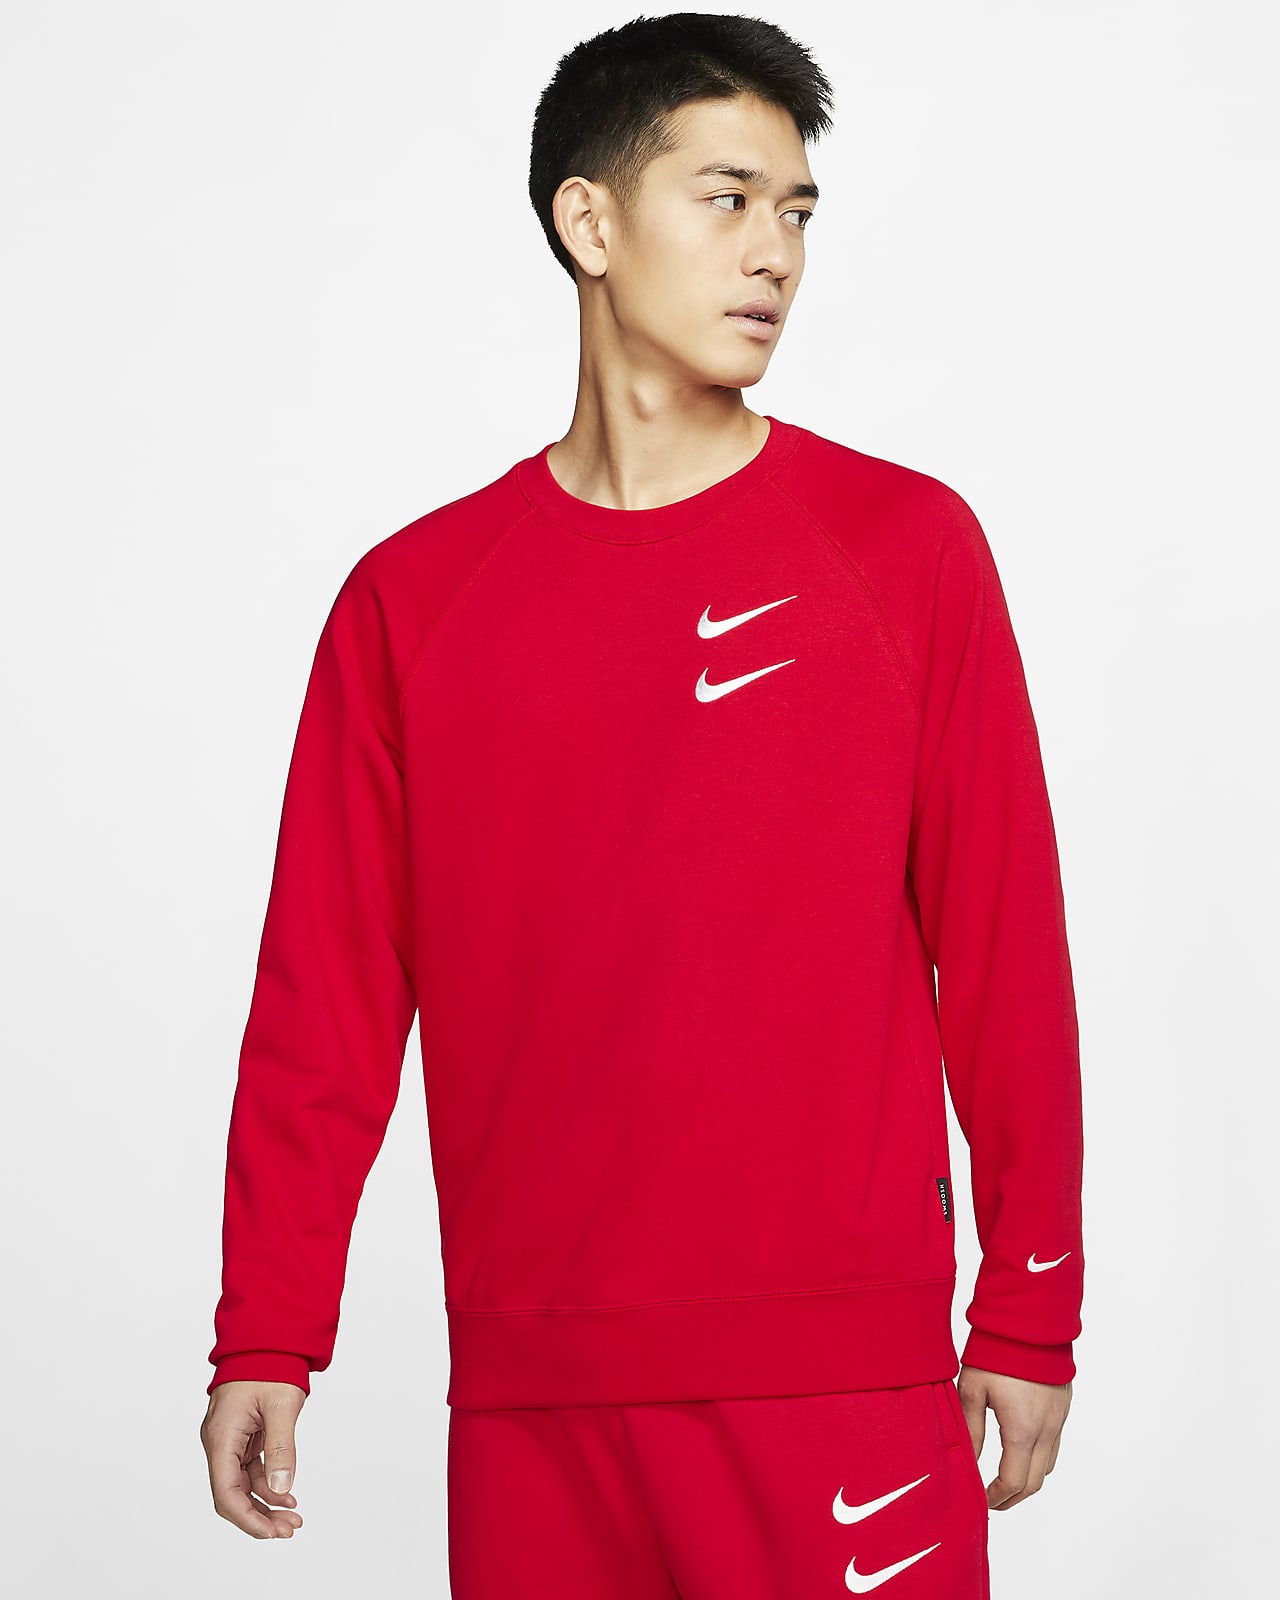 Nike Sportswear Swoosh French Terry 男子圆领上衣